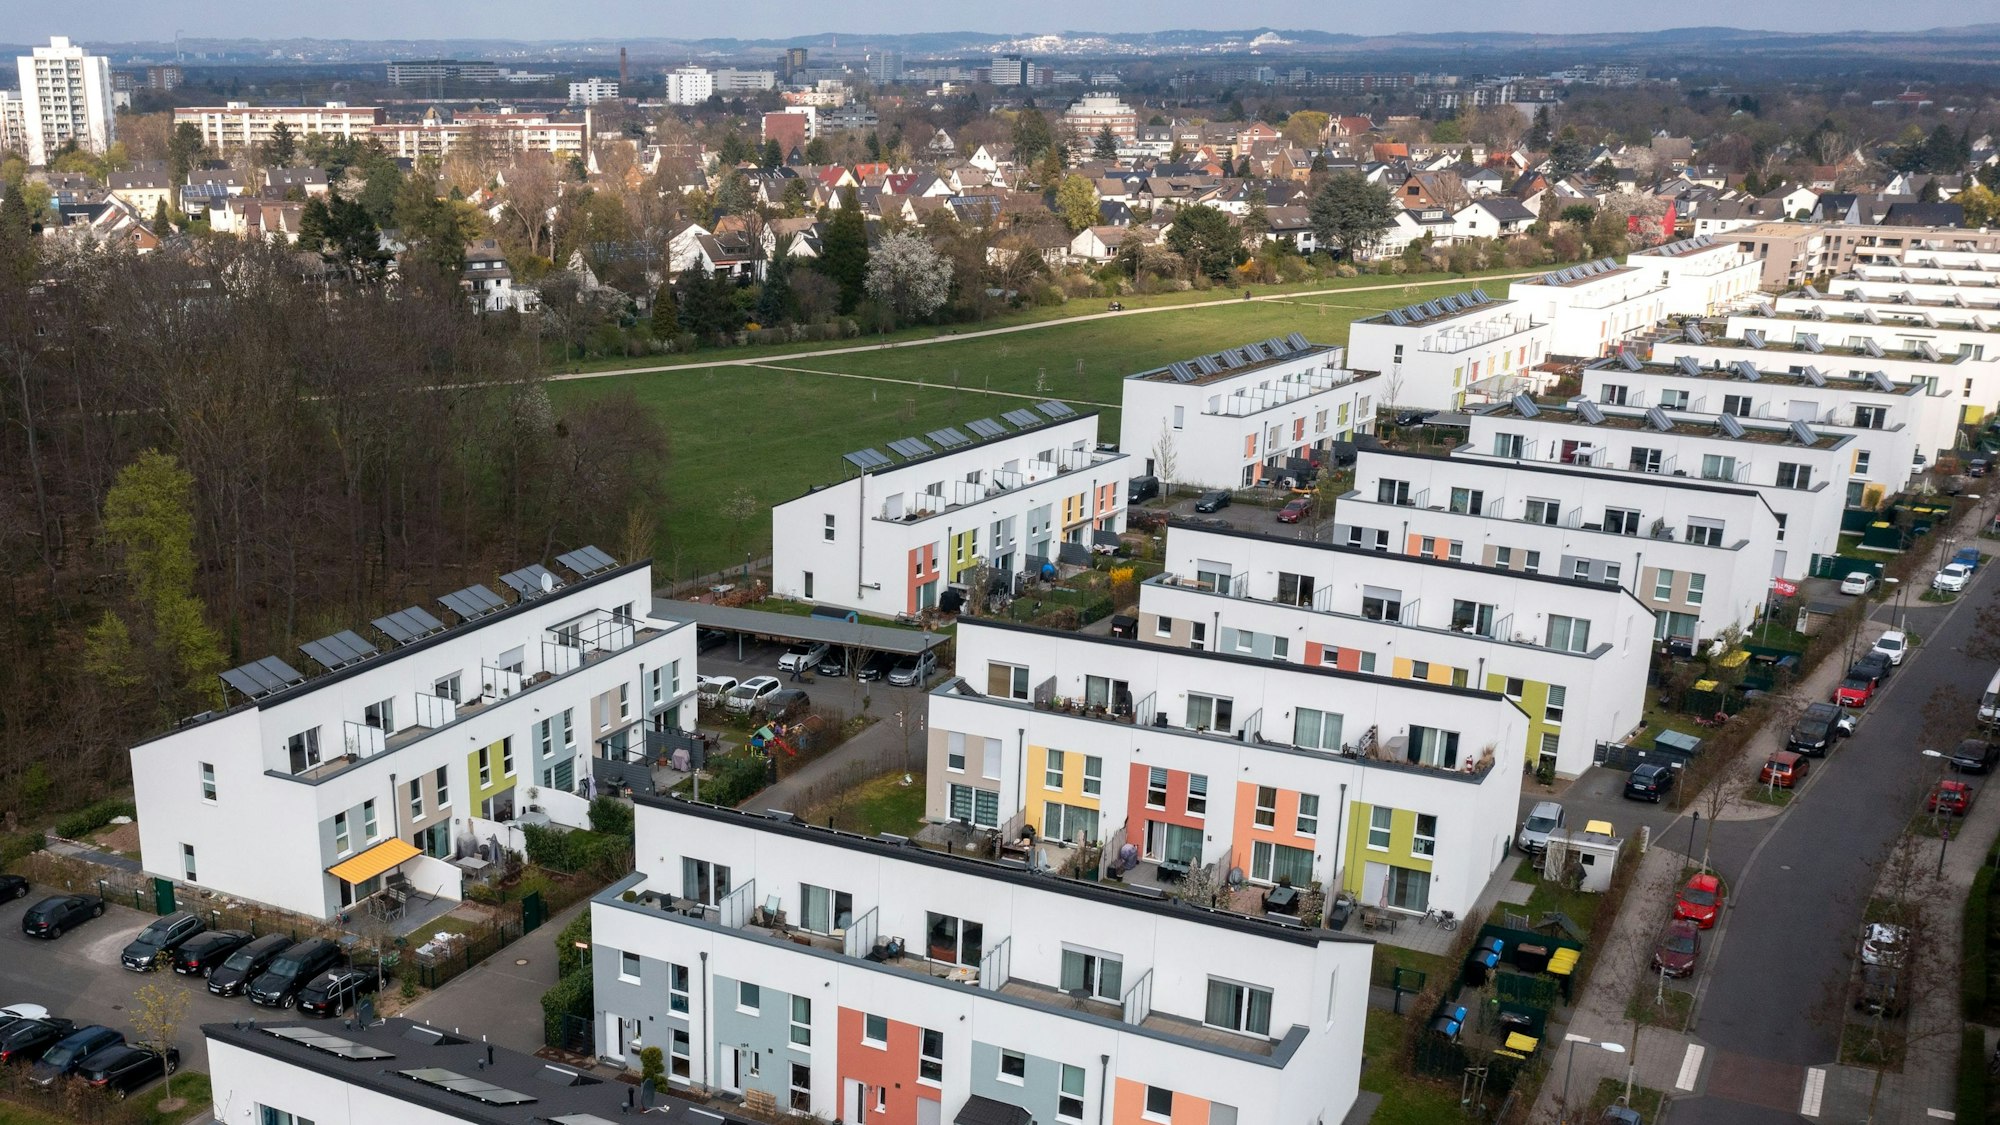 Das Waldbadviertel im Kölner Stadtteil Ostheim mit zahlreichen Einfamilien- und Reihenhäusern. (Archiv)